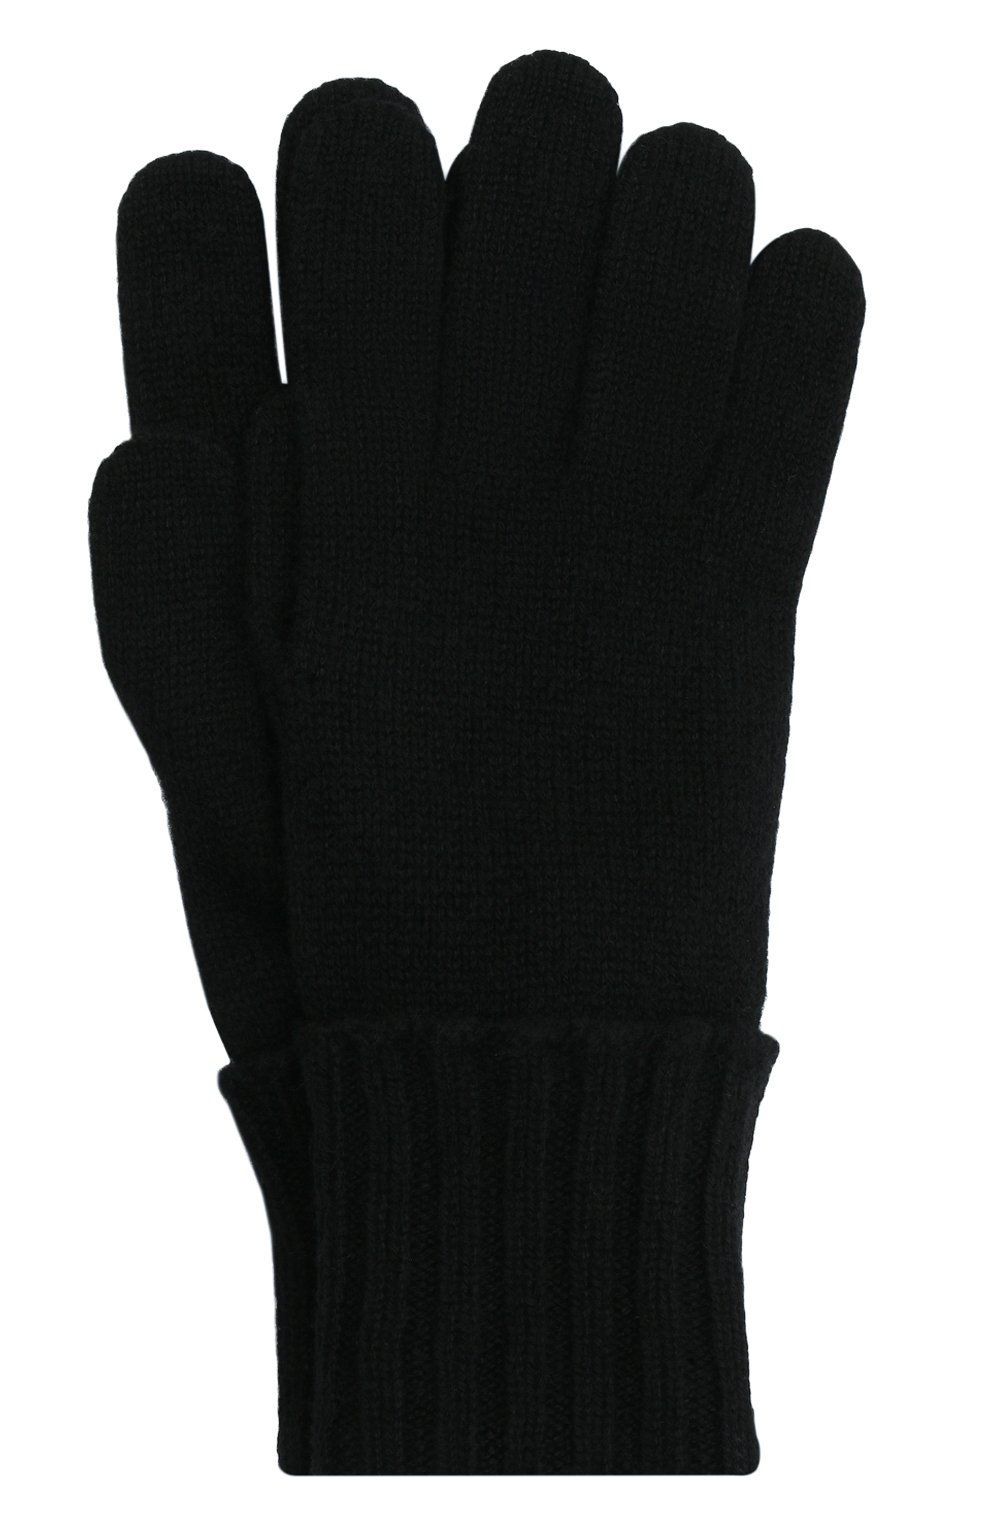 Женские кашемировые перчатки INVERNI черного цвета, арт. 5299 GU | Фото 1 (Материал: Текстиль, Кашемир, Шерсть; Кросс-КТ: Трикотаж)